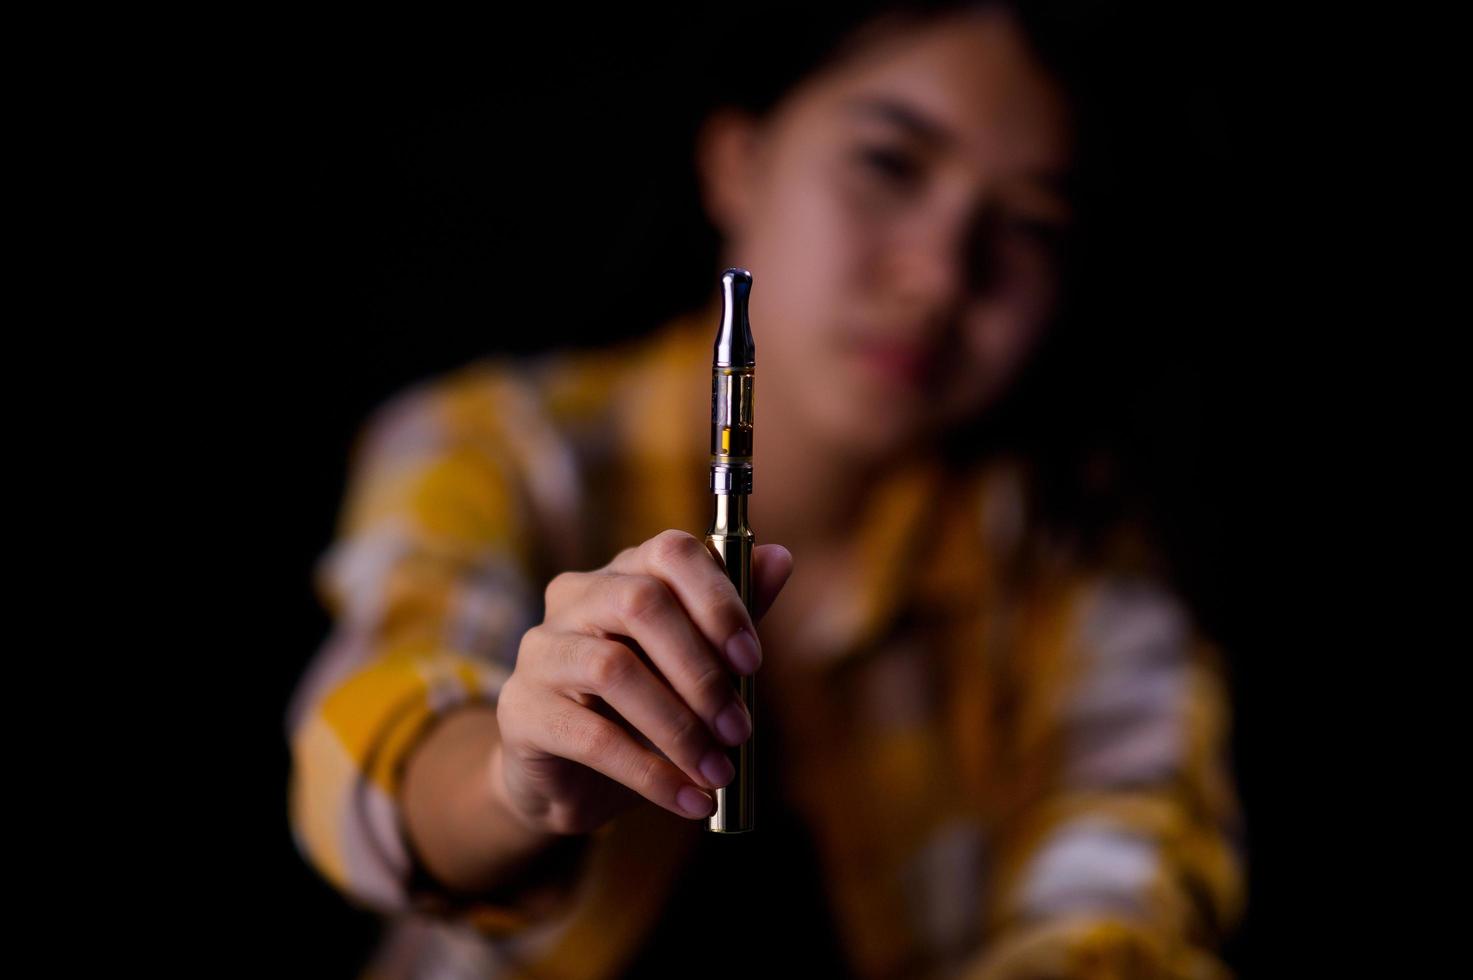 adolescente vaporiser du cannabis à travers un vaporisateur contenant de l'huile de cannabis dans un tube après chauffage électrique photo